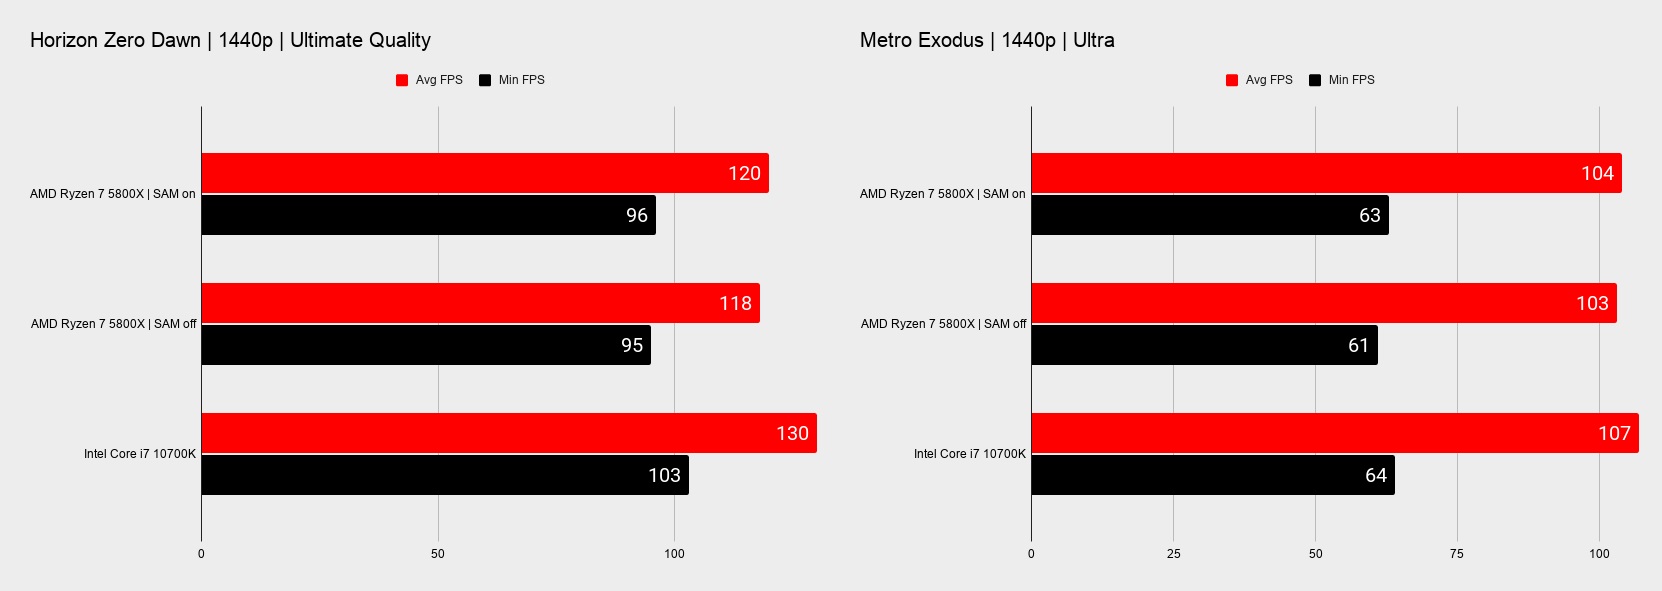 نمودار تاثیر SAM روی راندمان در بازی های Metro Exodus و Horizon Zero Dawn